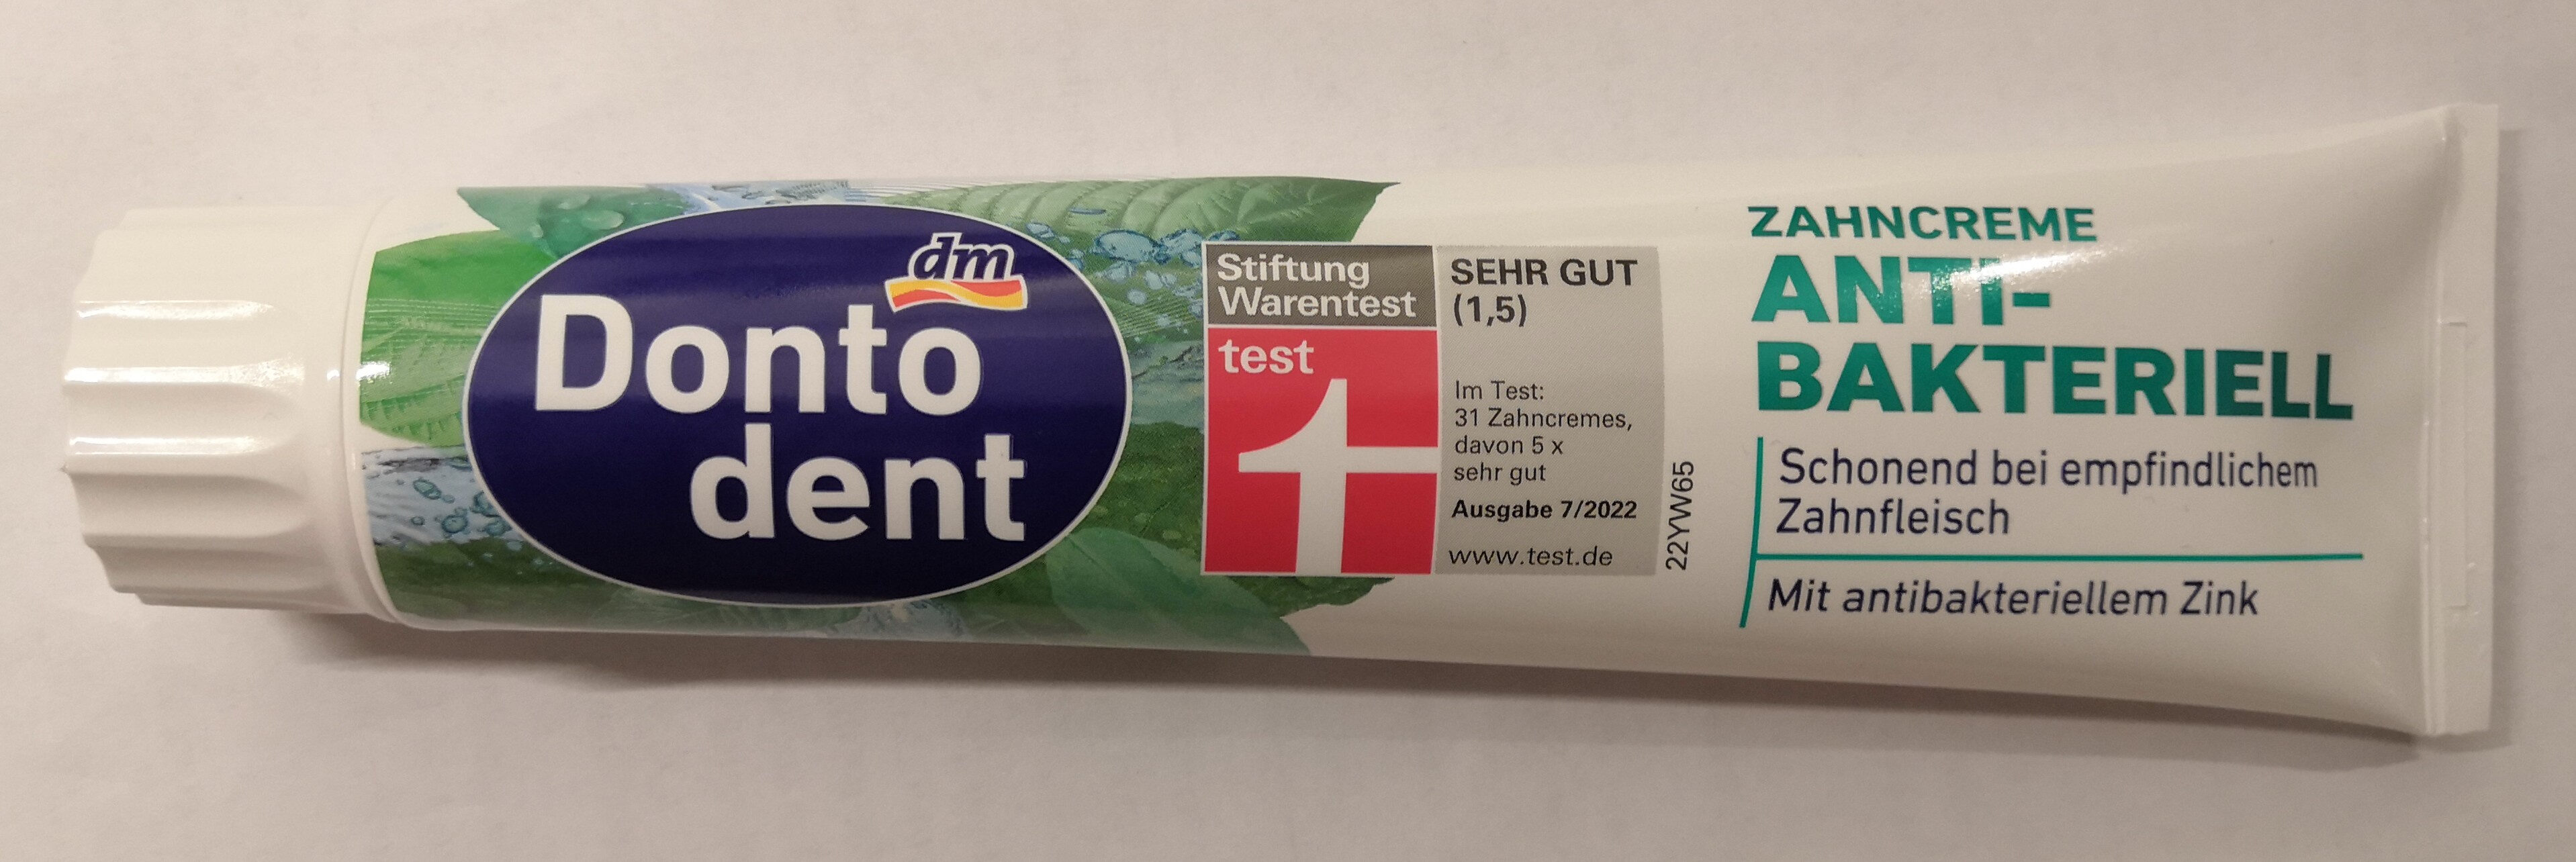 Dontodent Zahncreme Antibakteriell - Produkt - de